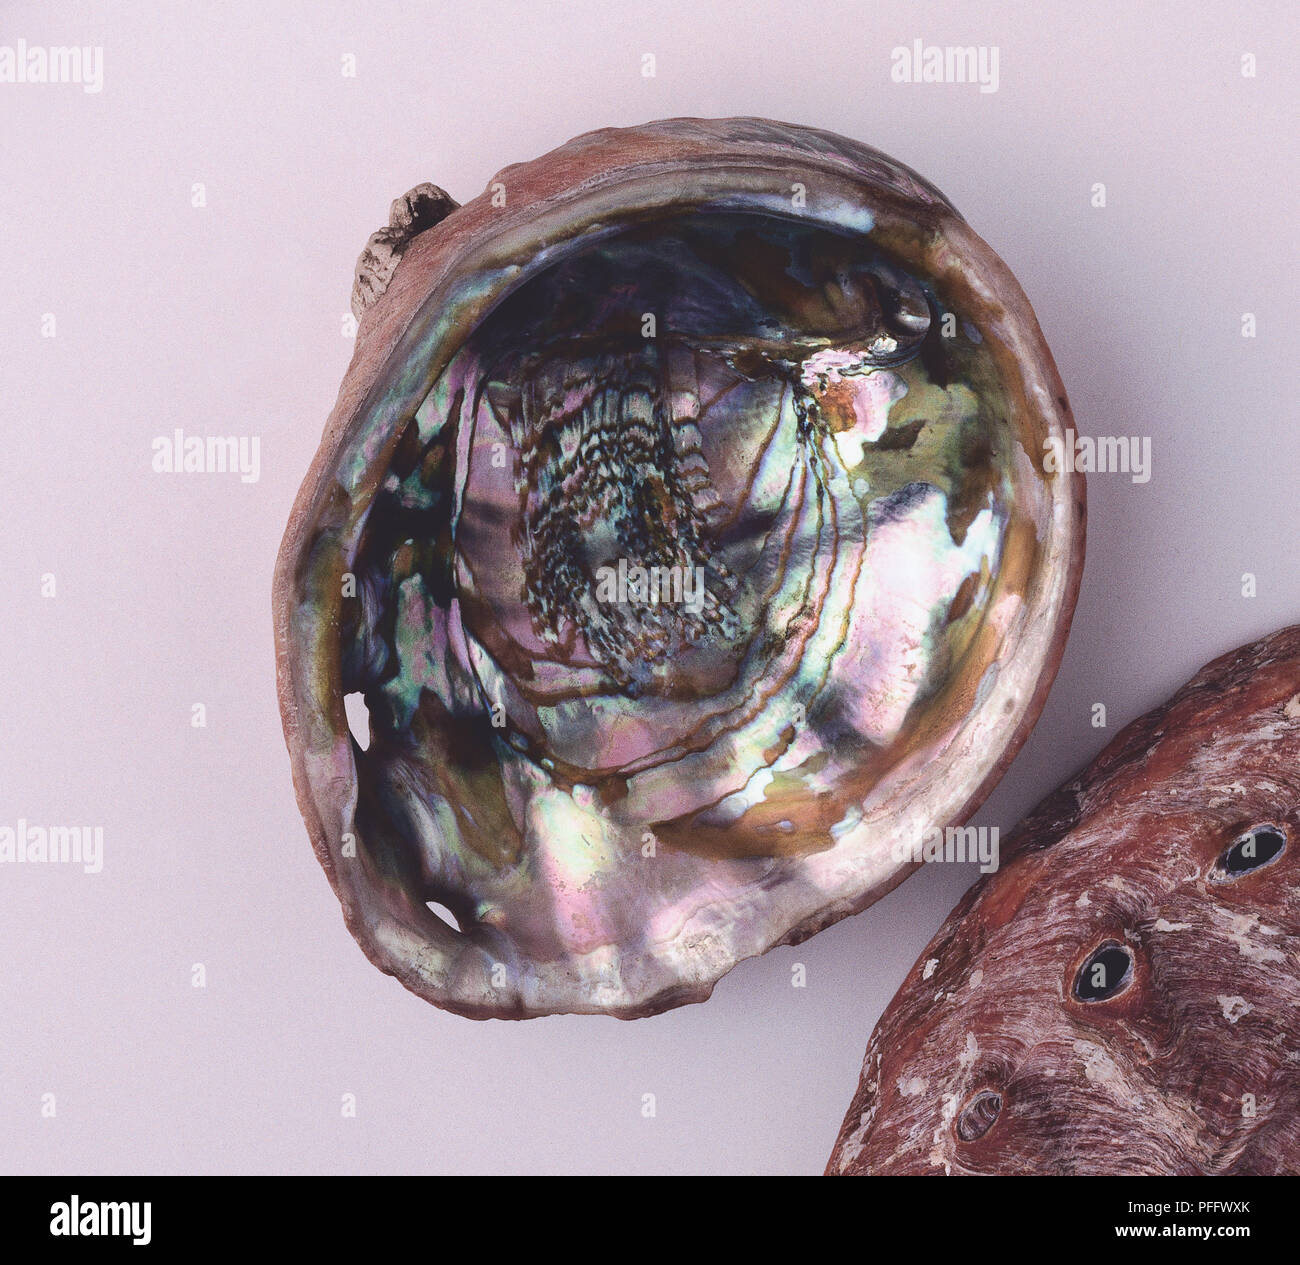 Whole and opened Abalone (Haliotis rufescens) shells Stock Photo